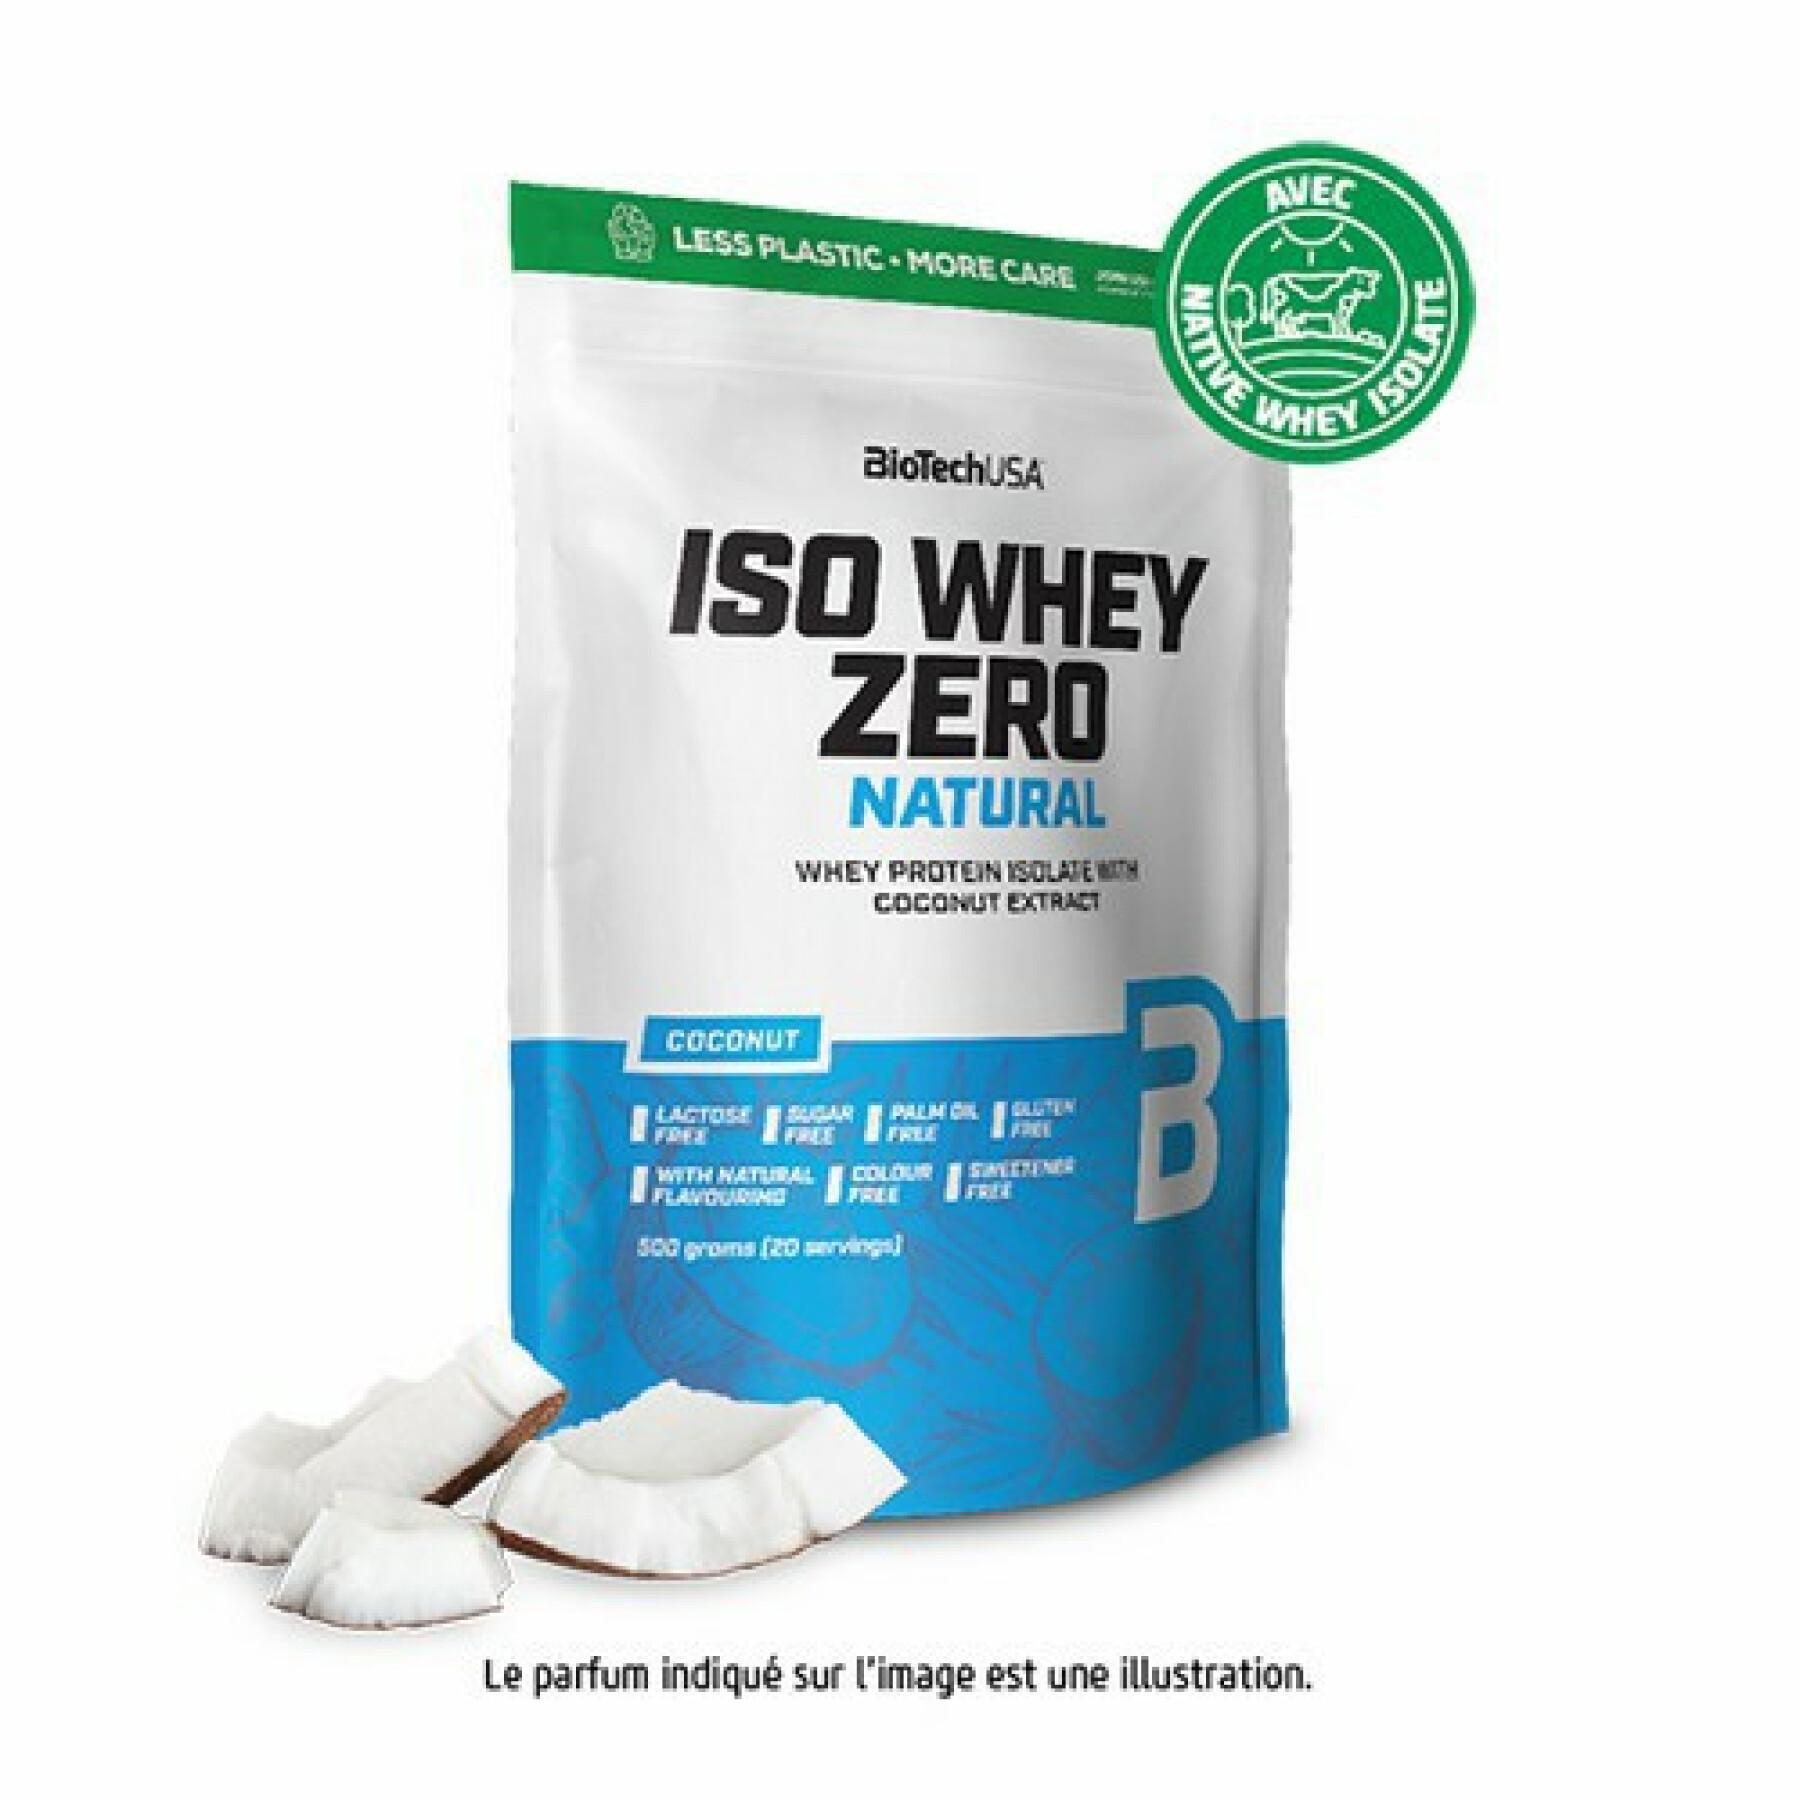 Pak van 10 zakjes proteïne Biotech USA iso whey zero lactose free - Coco - 500g